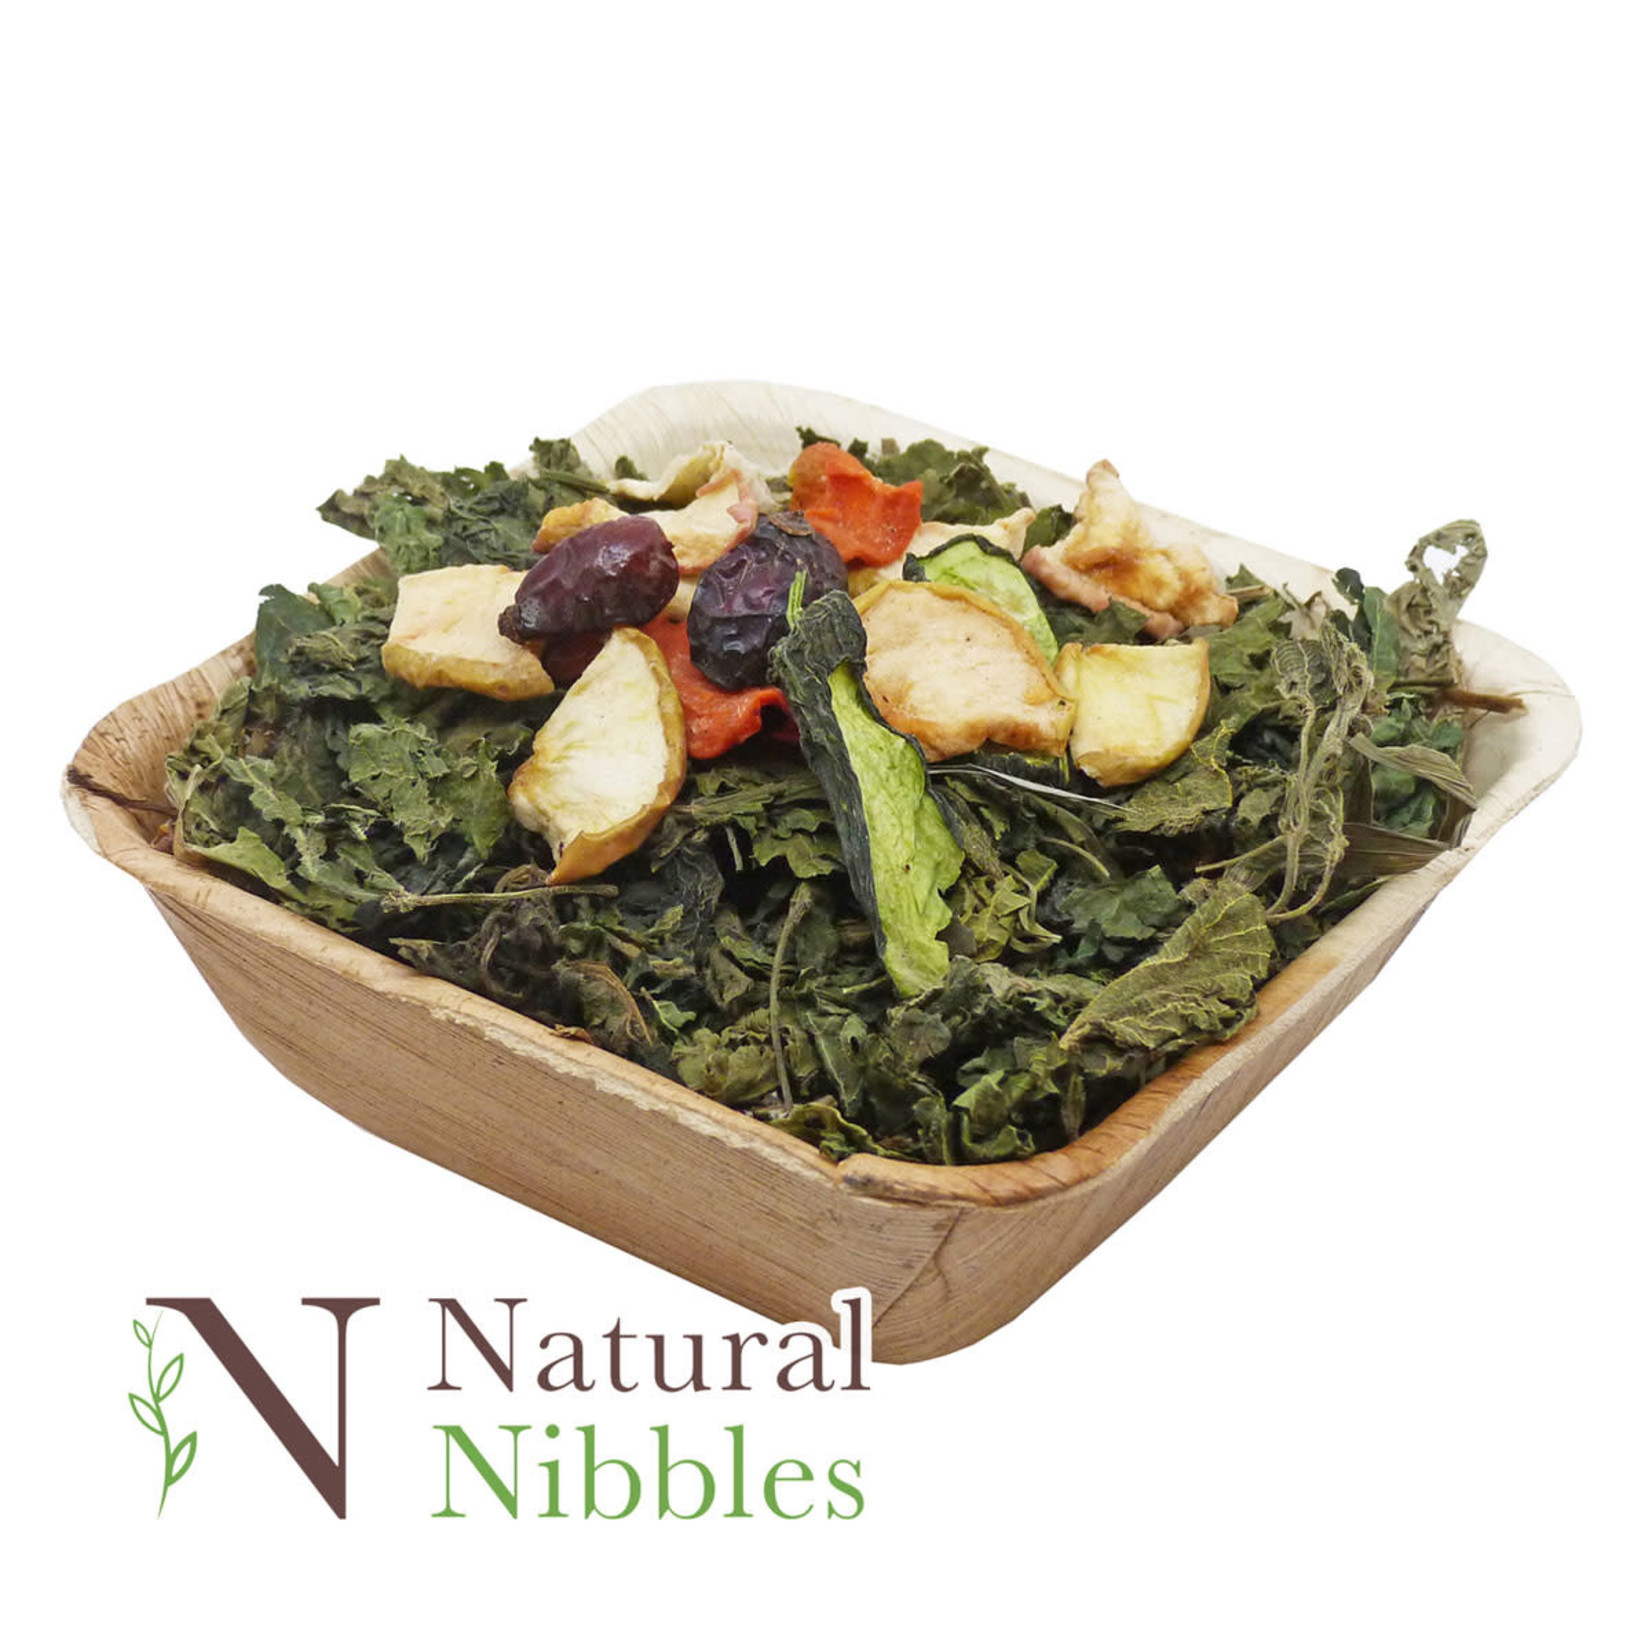 Petlife Natural Nibbles Edible Healthy Salad Bowl Small Animal Treat, 40g